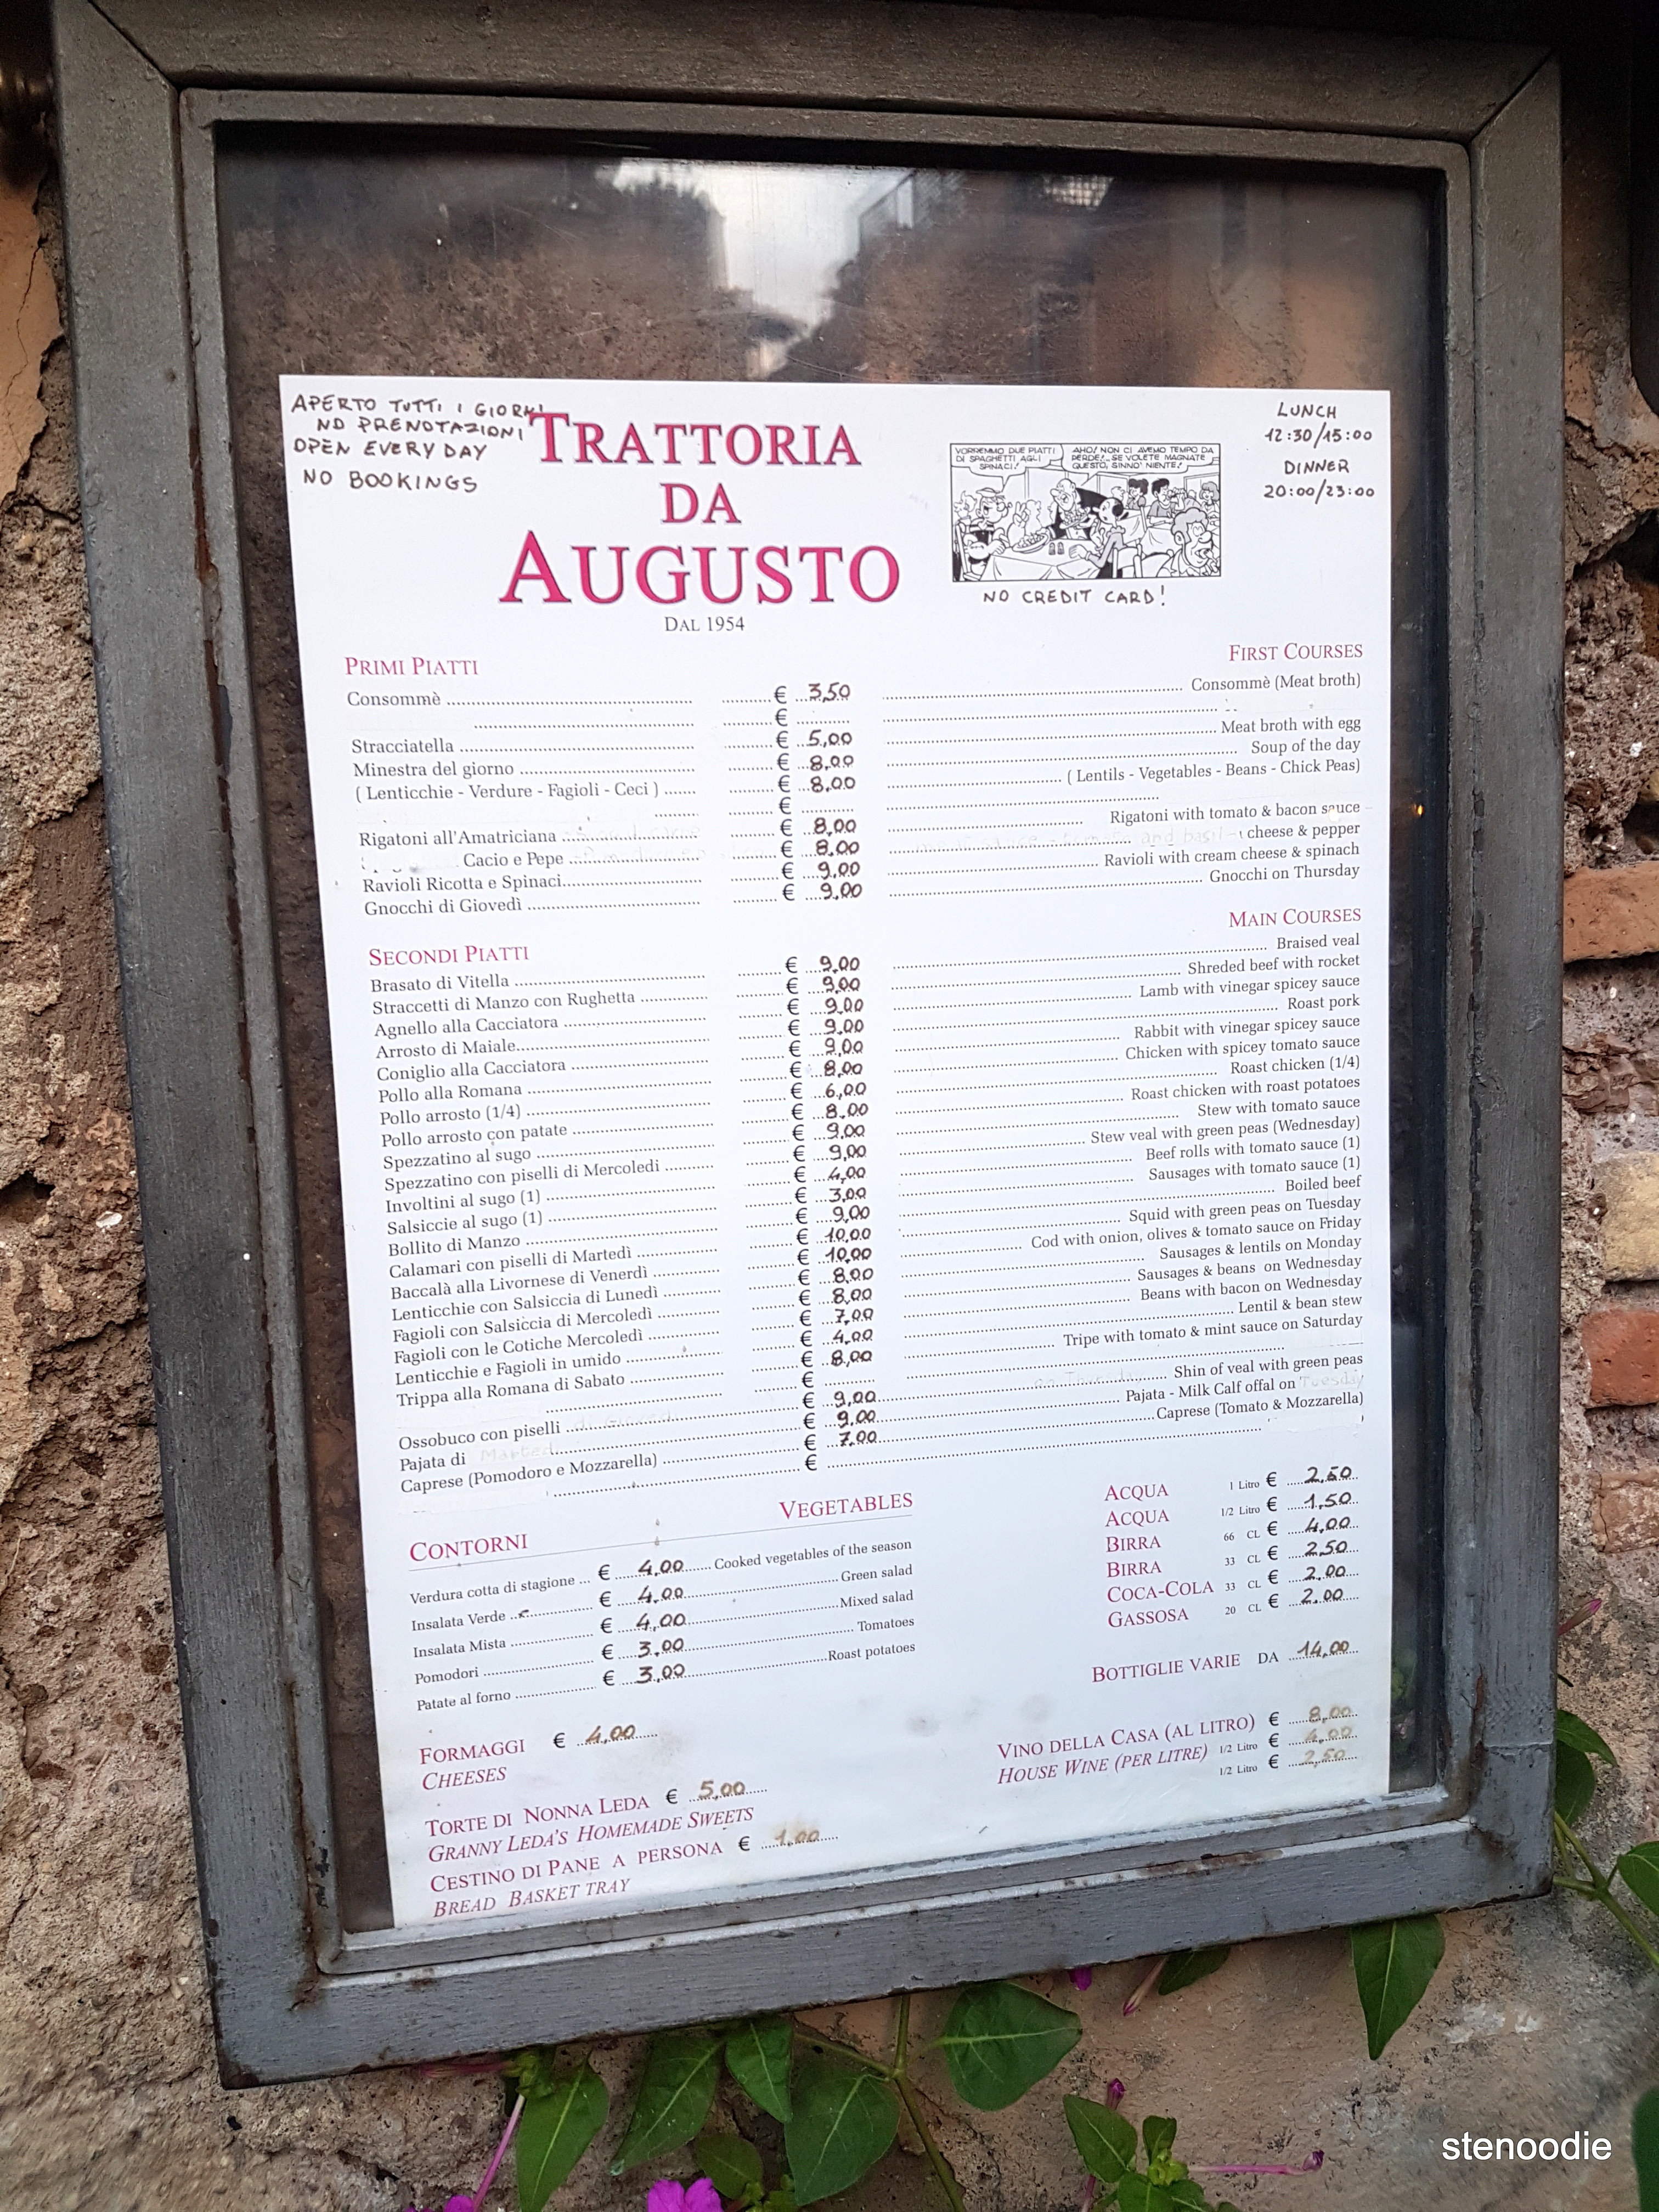 Trattoria da Augusto menu and prices